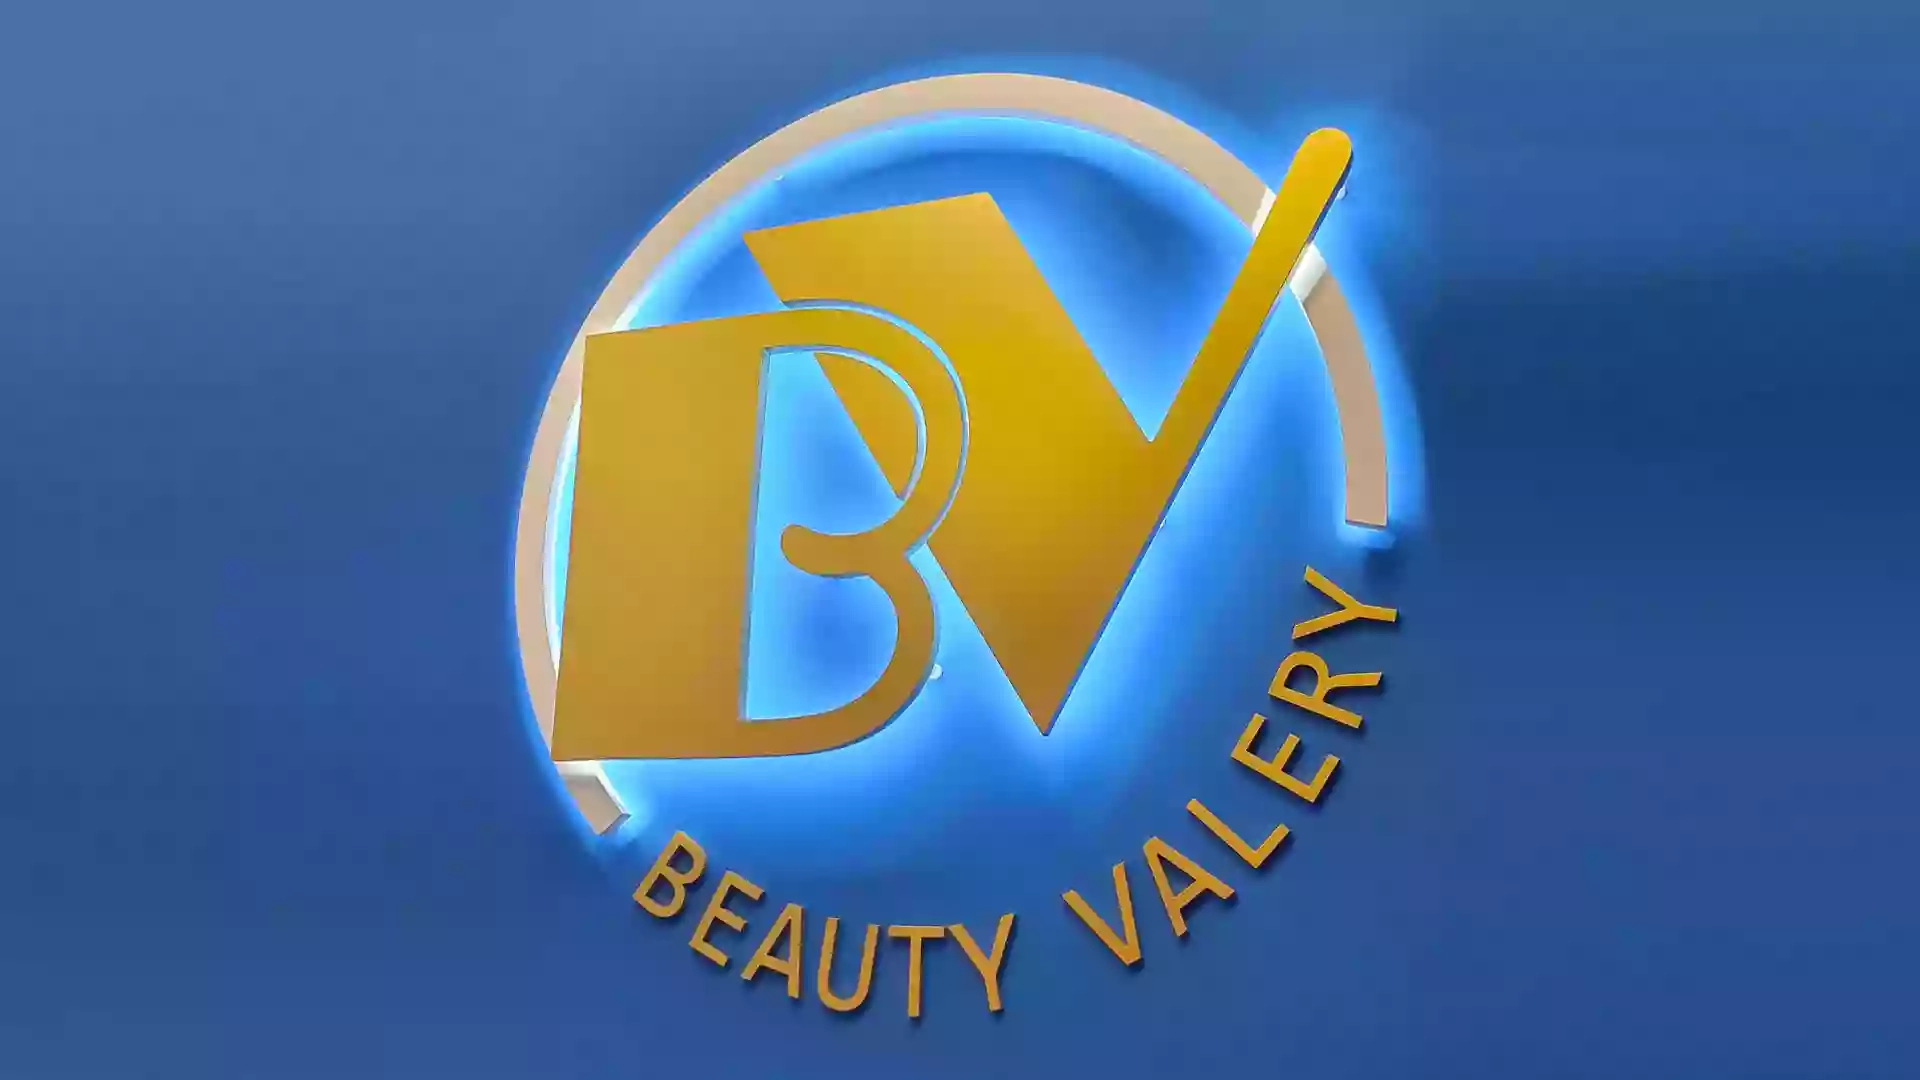 Beauty Valery